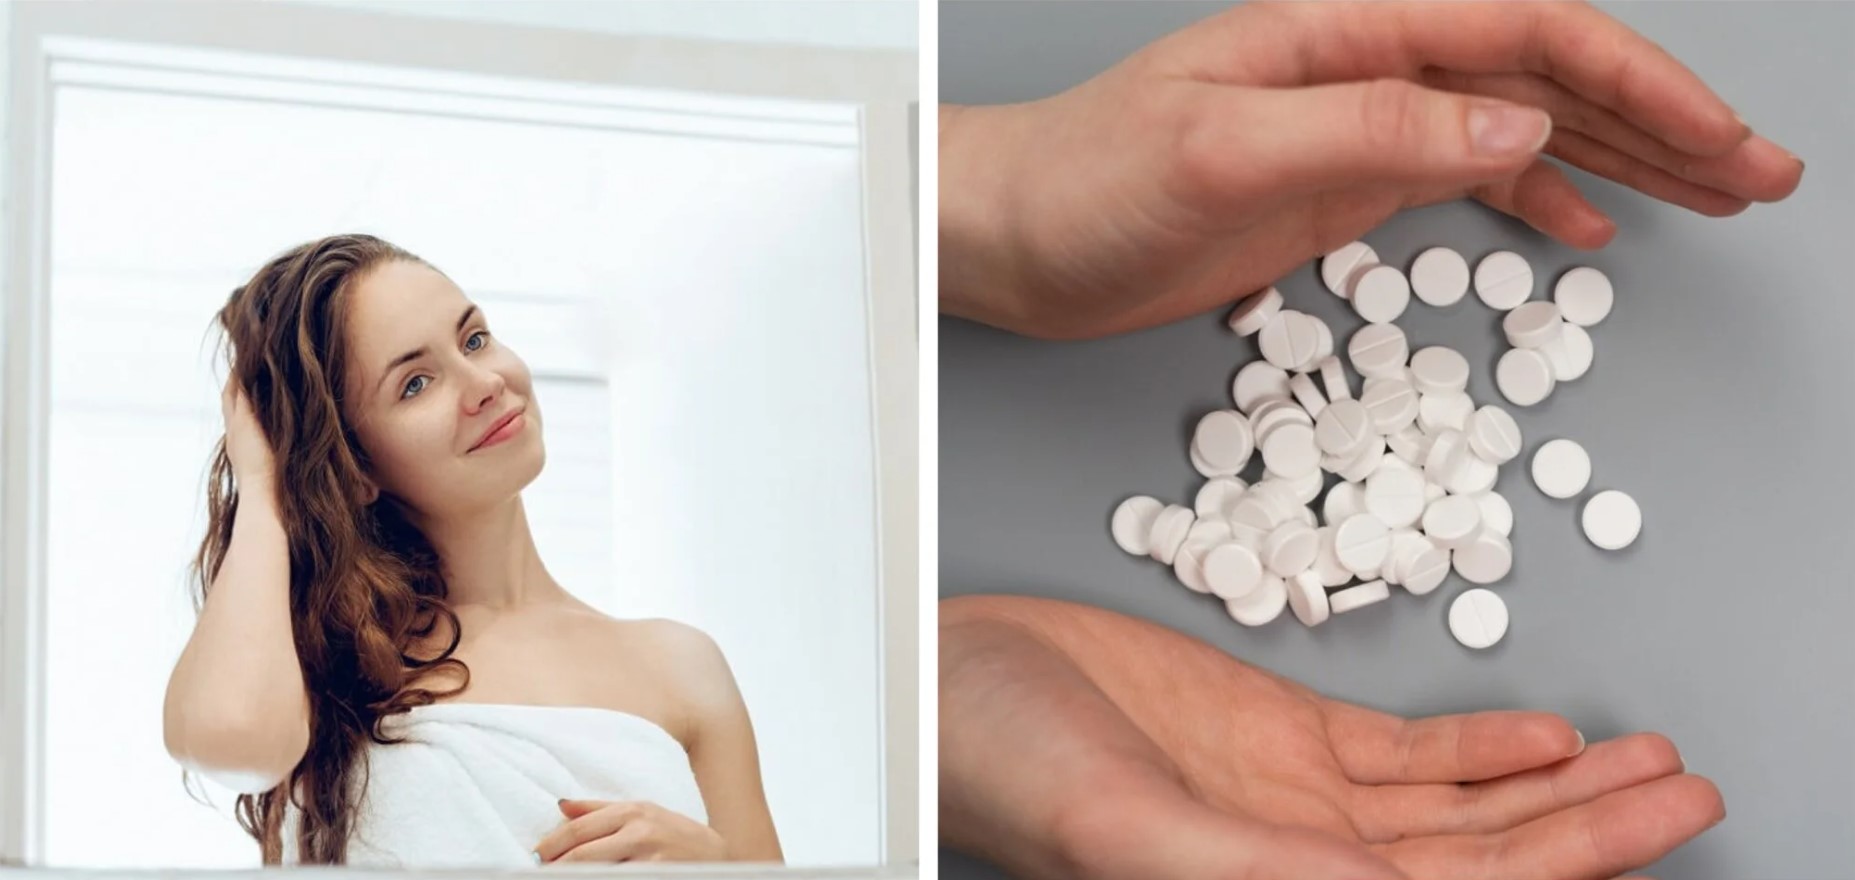 Cómo preparar tratamientos de aspirinas para mejorar la salud capilar